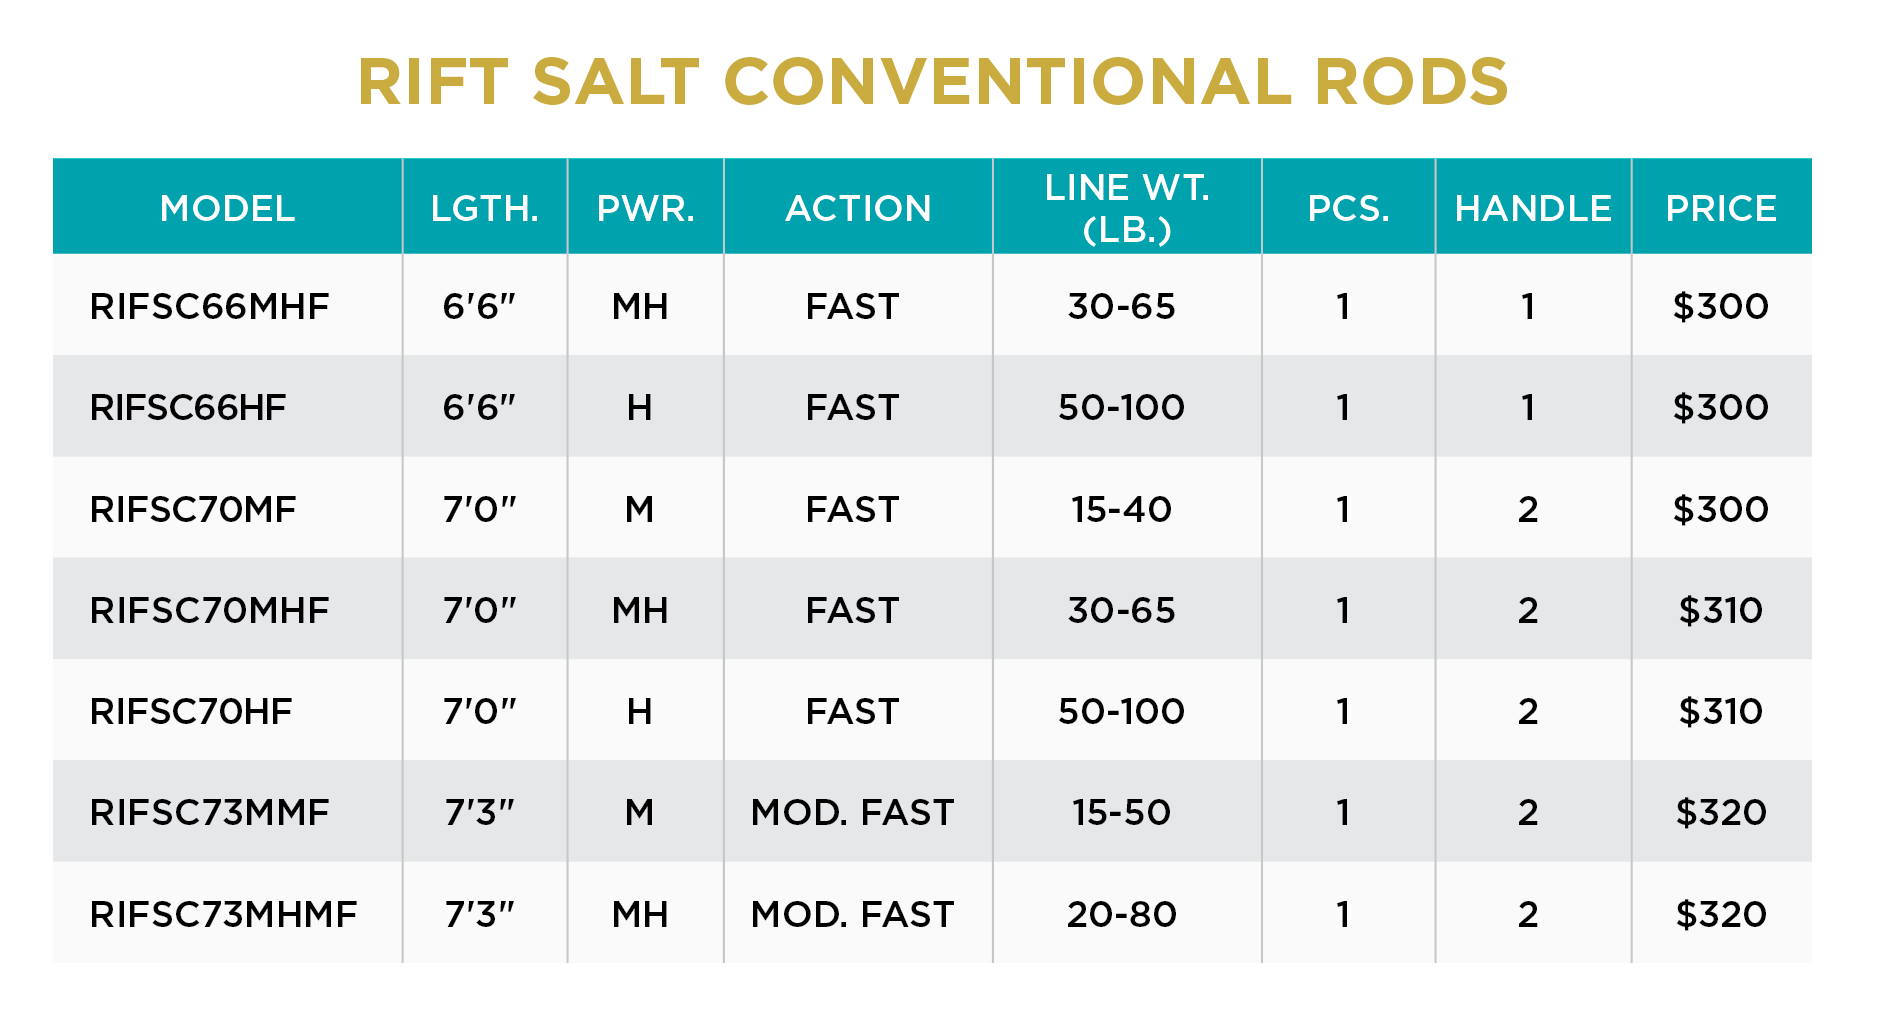 St. Croix Rift Salt Series - Conventional